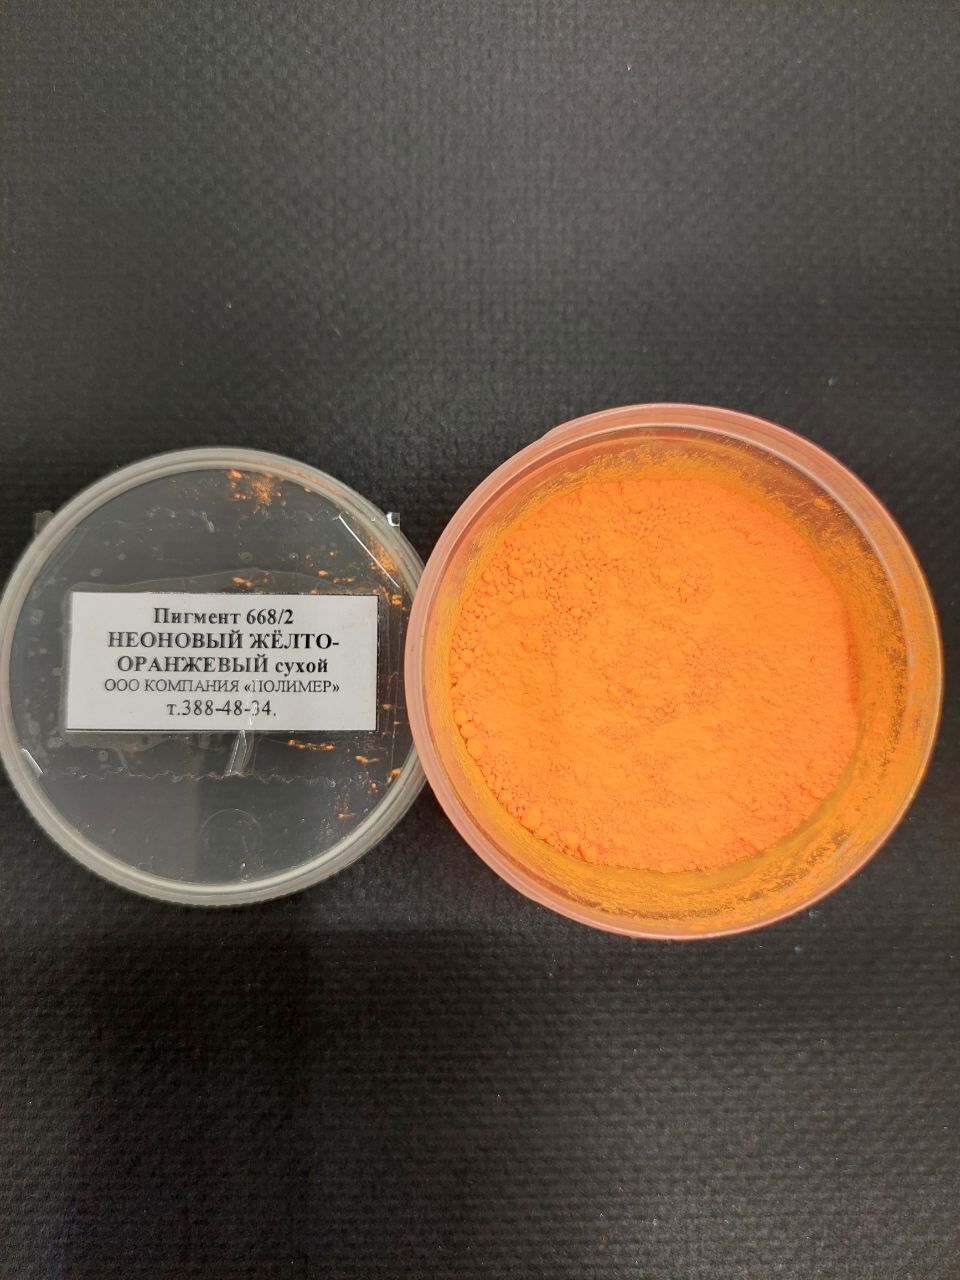 Пигмент 668/2 неоновый жёлто-оранжевый сухой